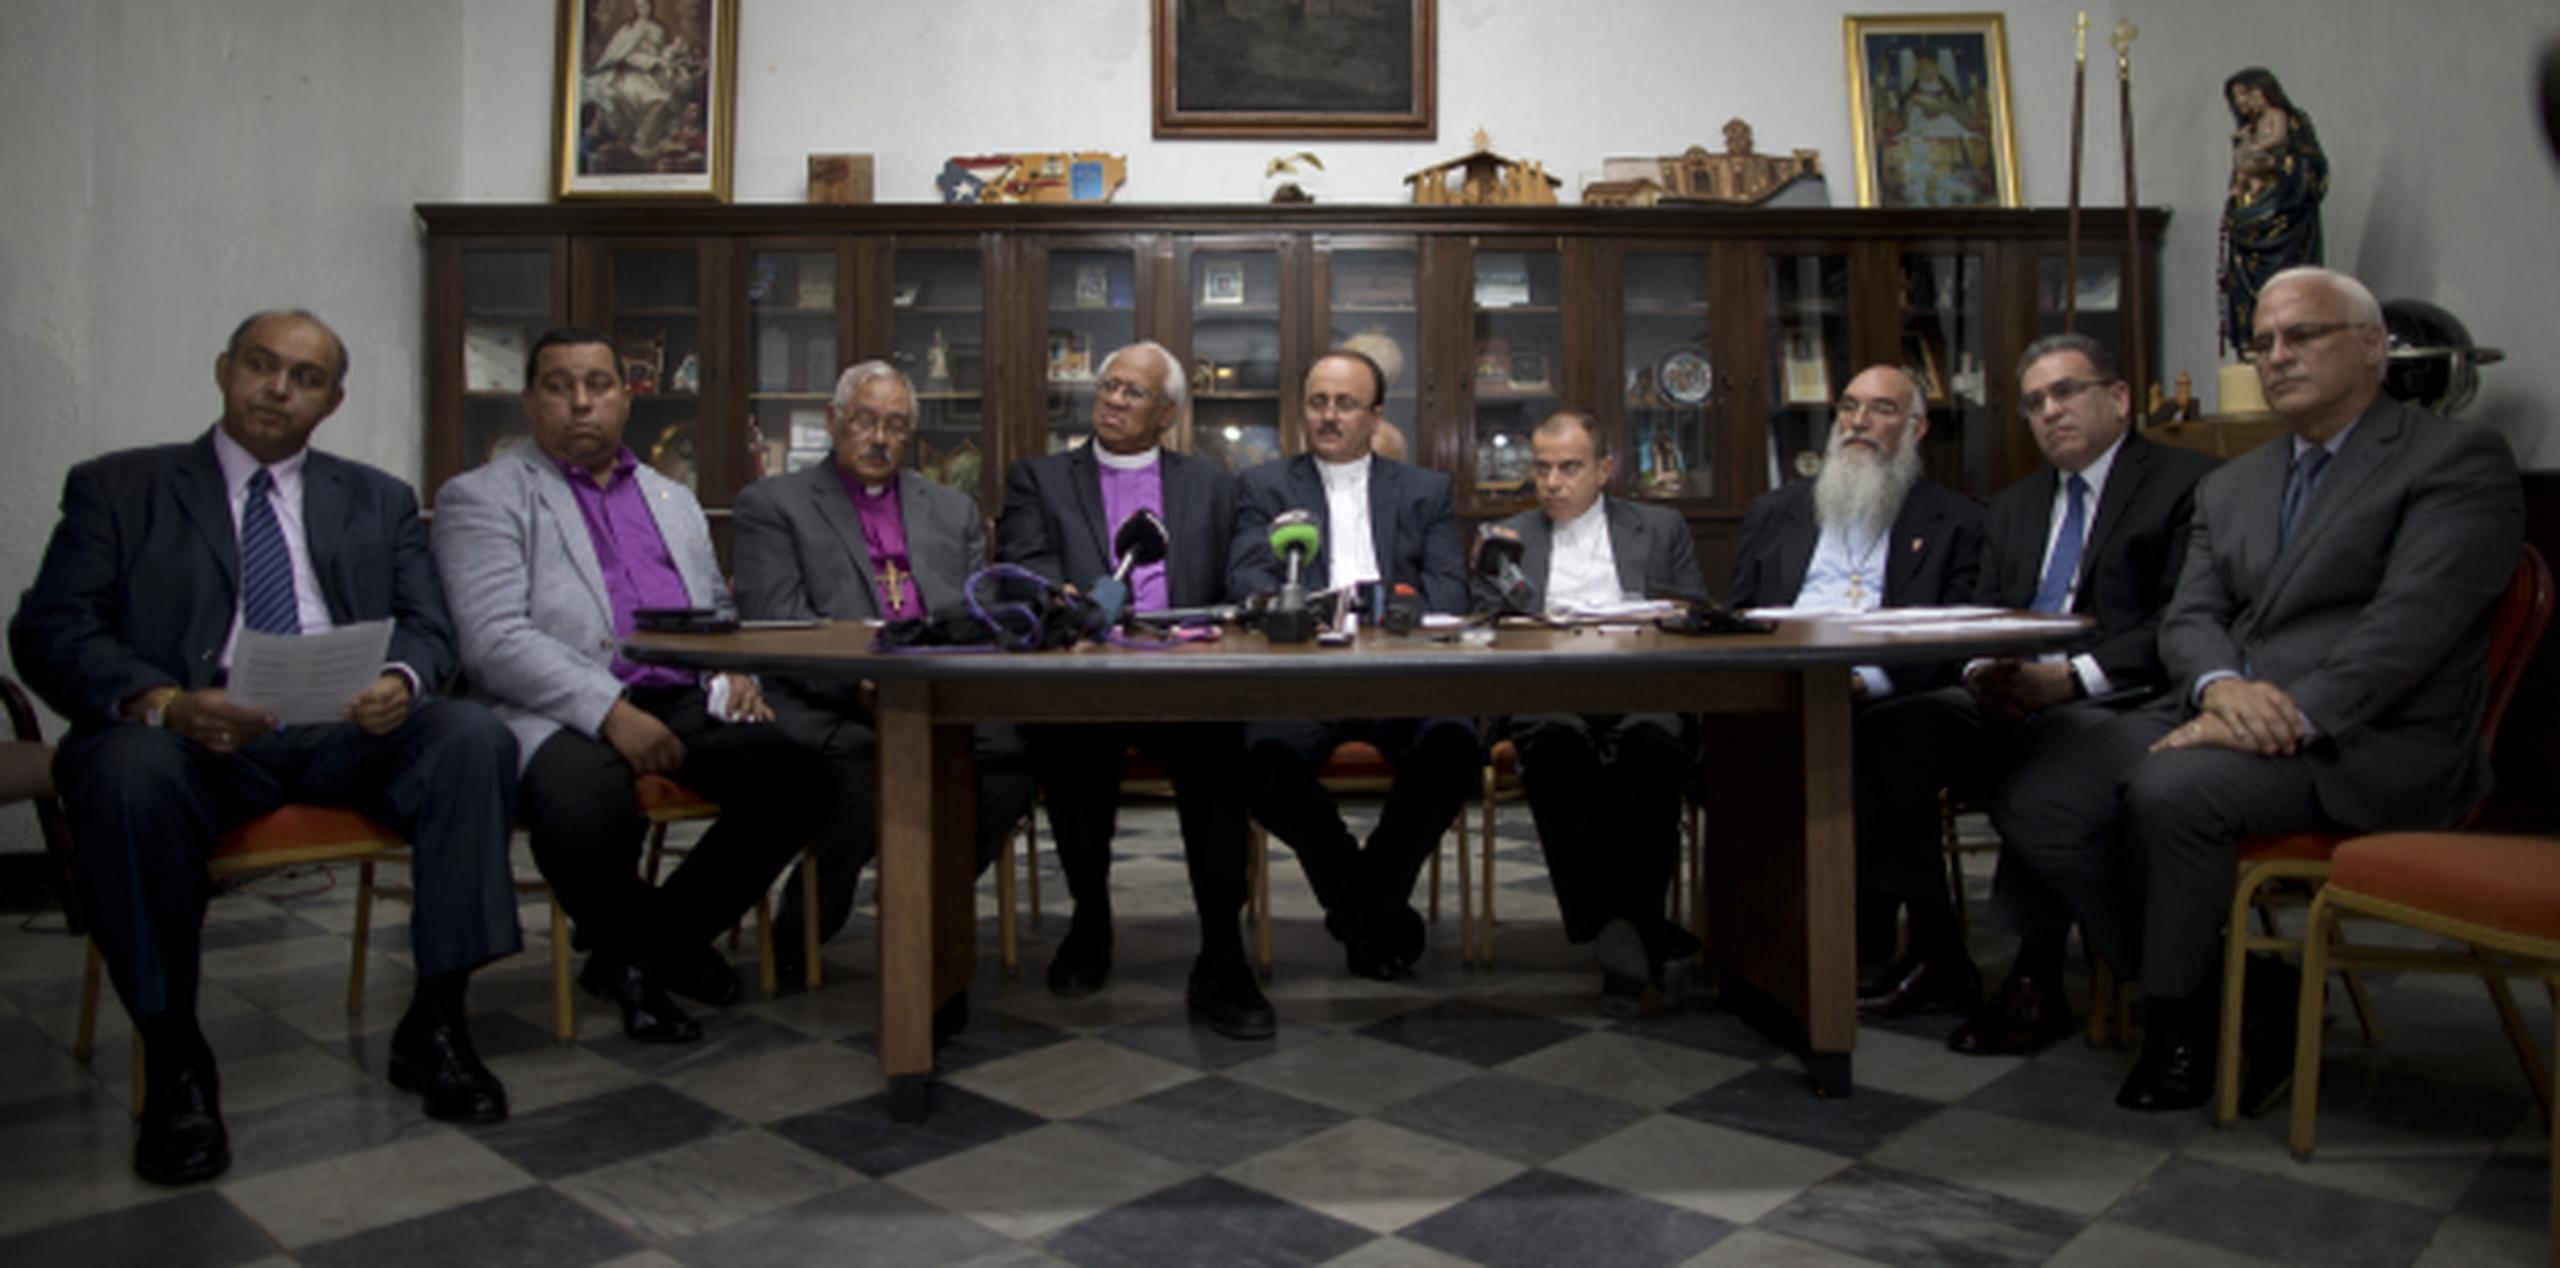 Parte del grupo de altos líderes religiosos que participaron en la conferencia de prensa. (xavier.araujo@gfrmedia.com)